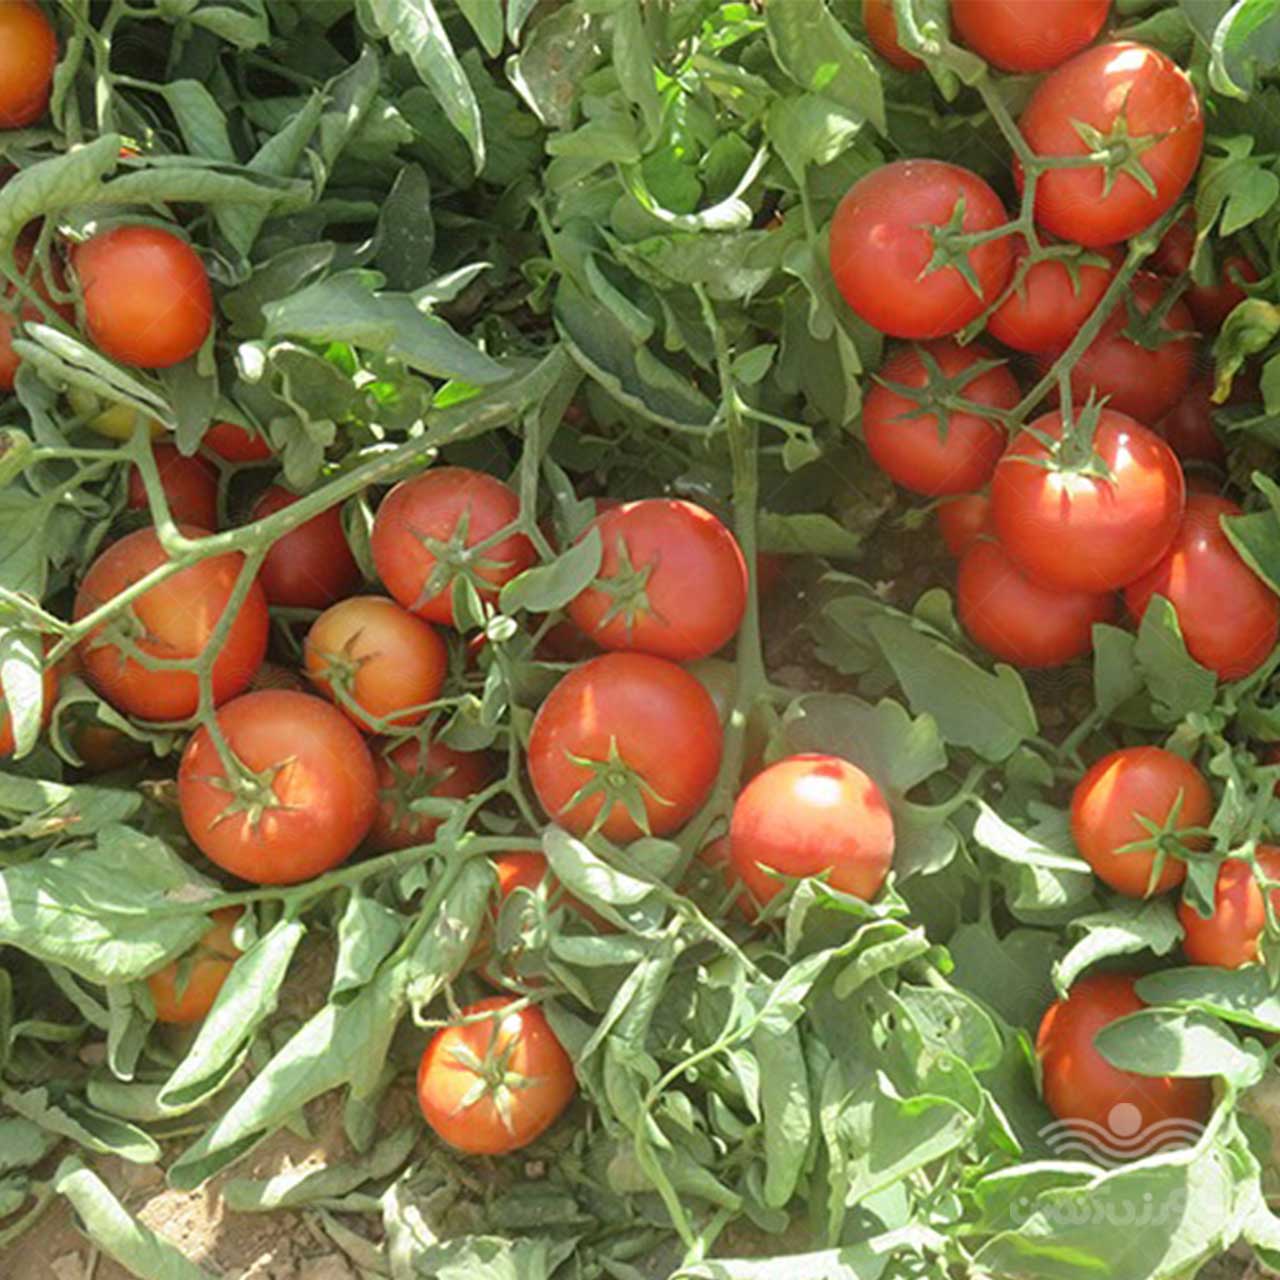 بذر گوجه فرنگی گرد کارون هیبرید F1 از شرکت نیکرسون هلند 5000 عددی 3